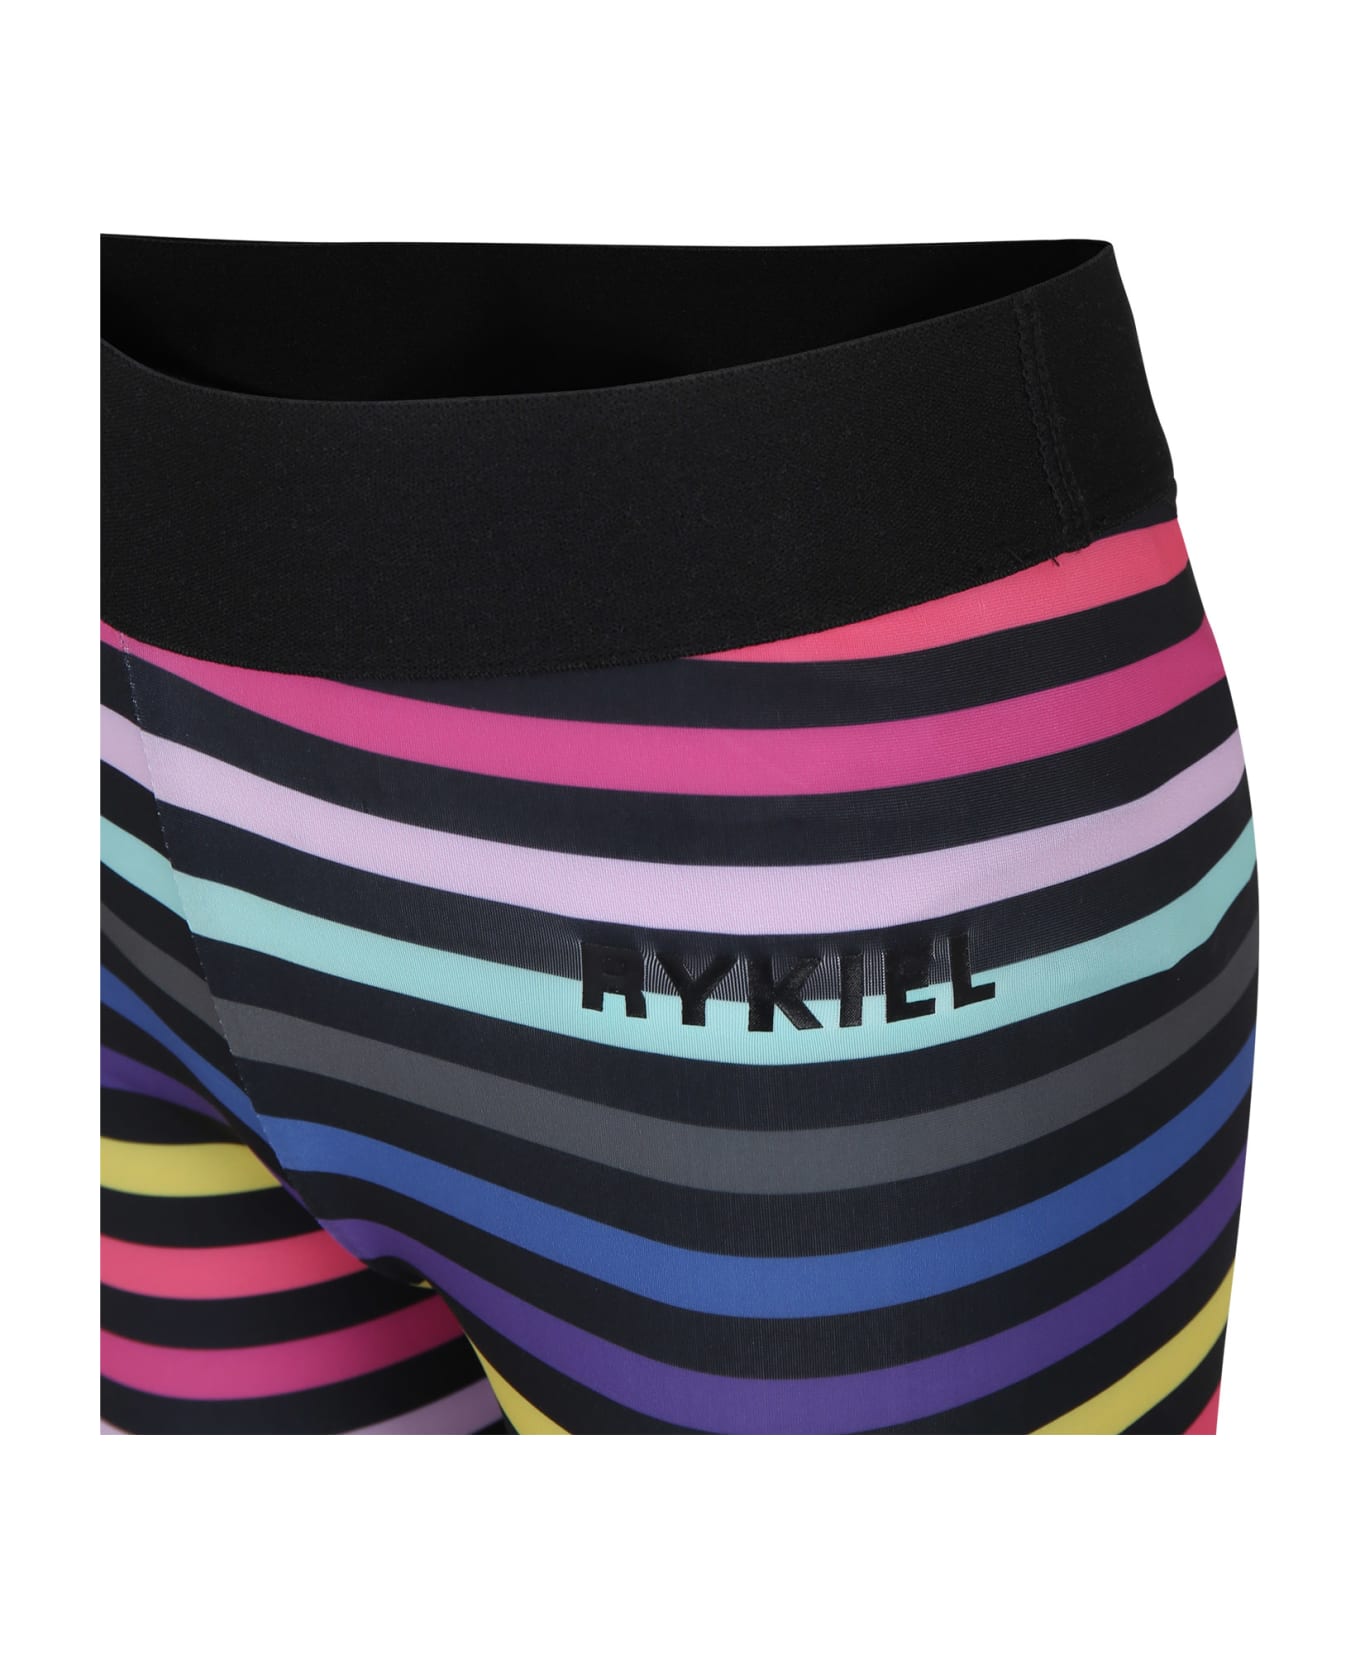 Rykiel Enfant Black Leggings For Girl With Logo - Multicolor